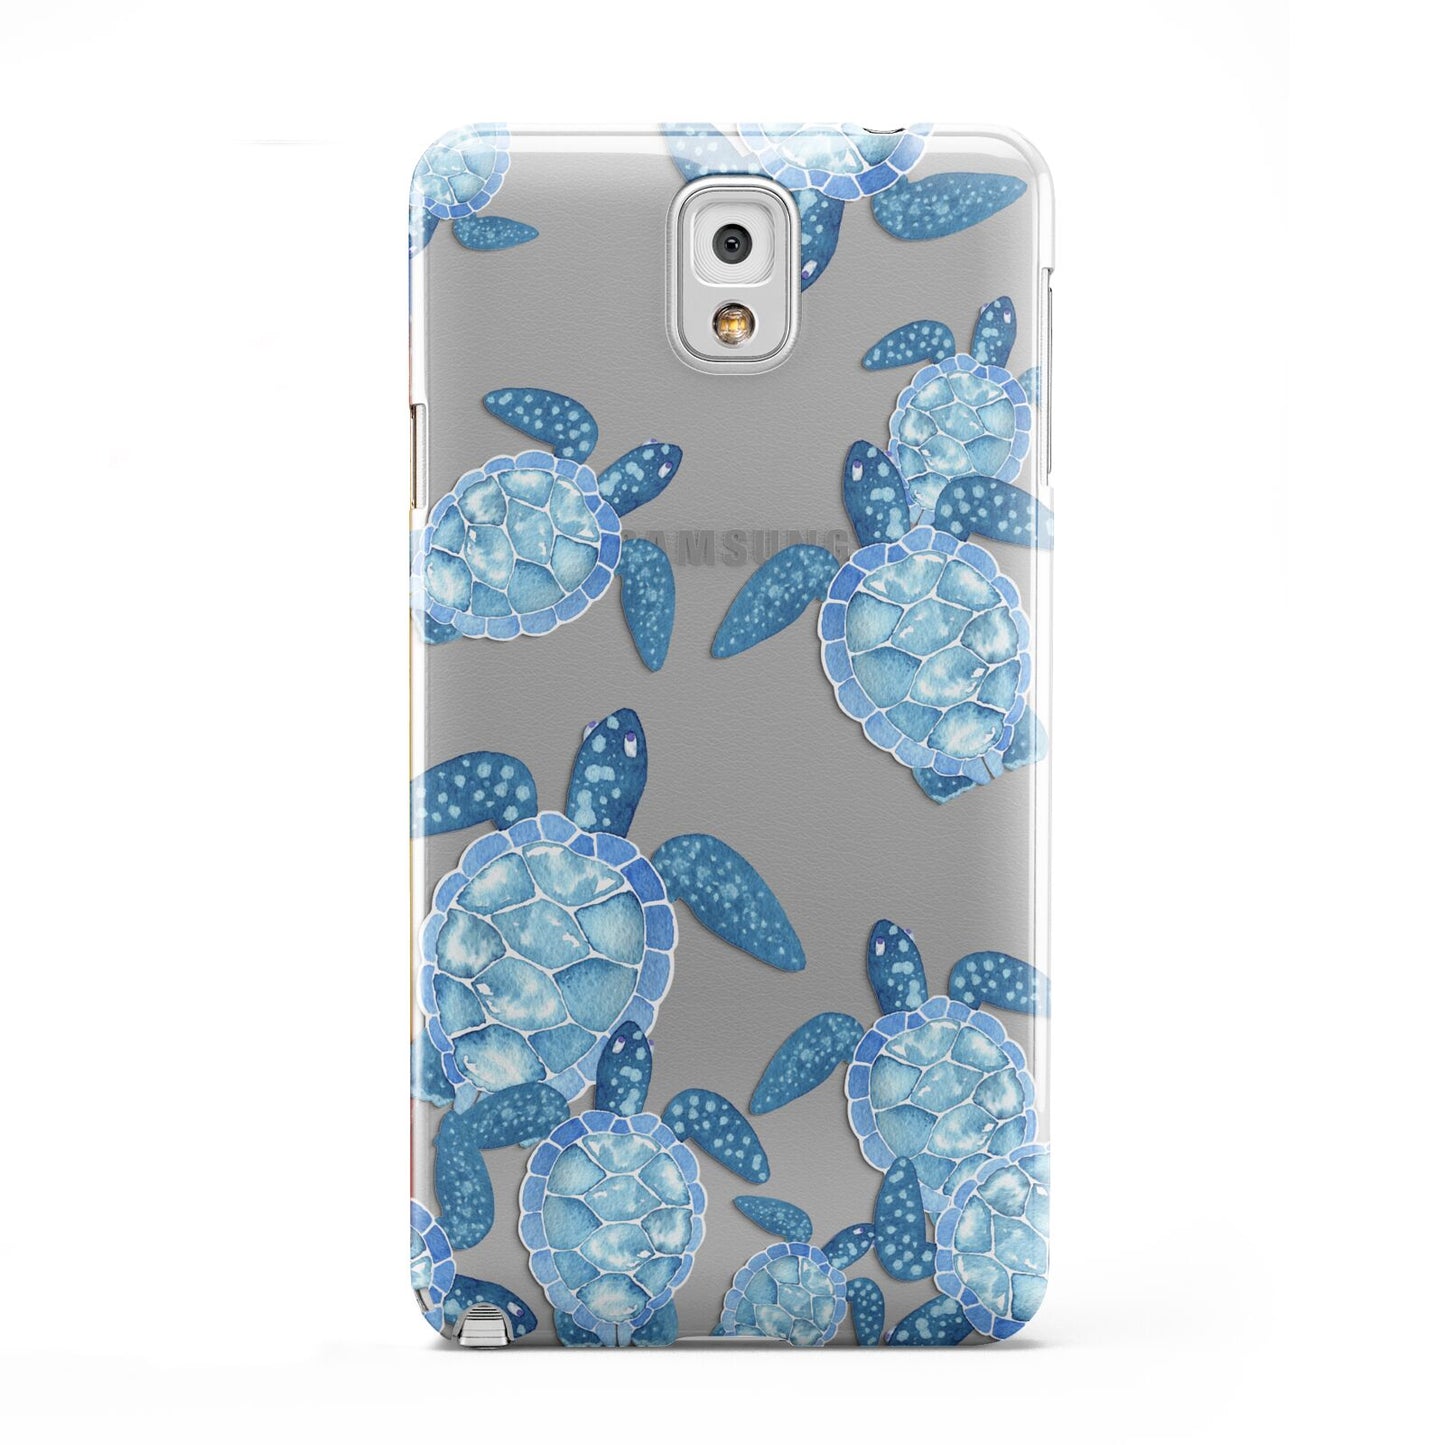 Turtle Samsung Galaxy Note 3 Case